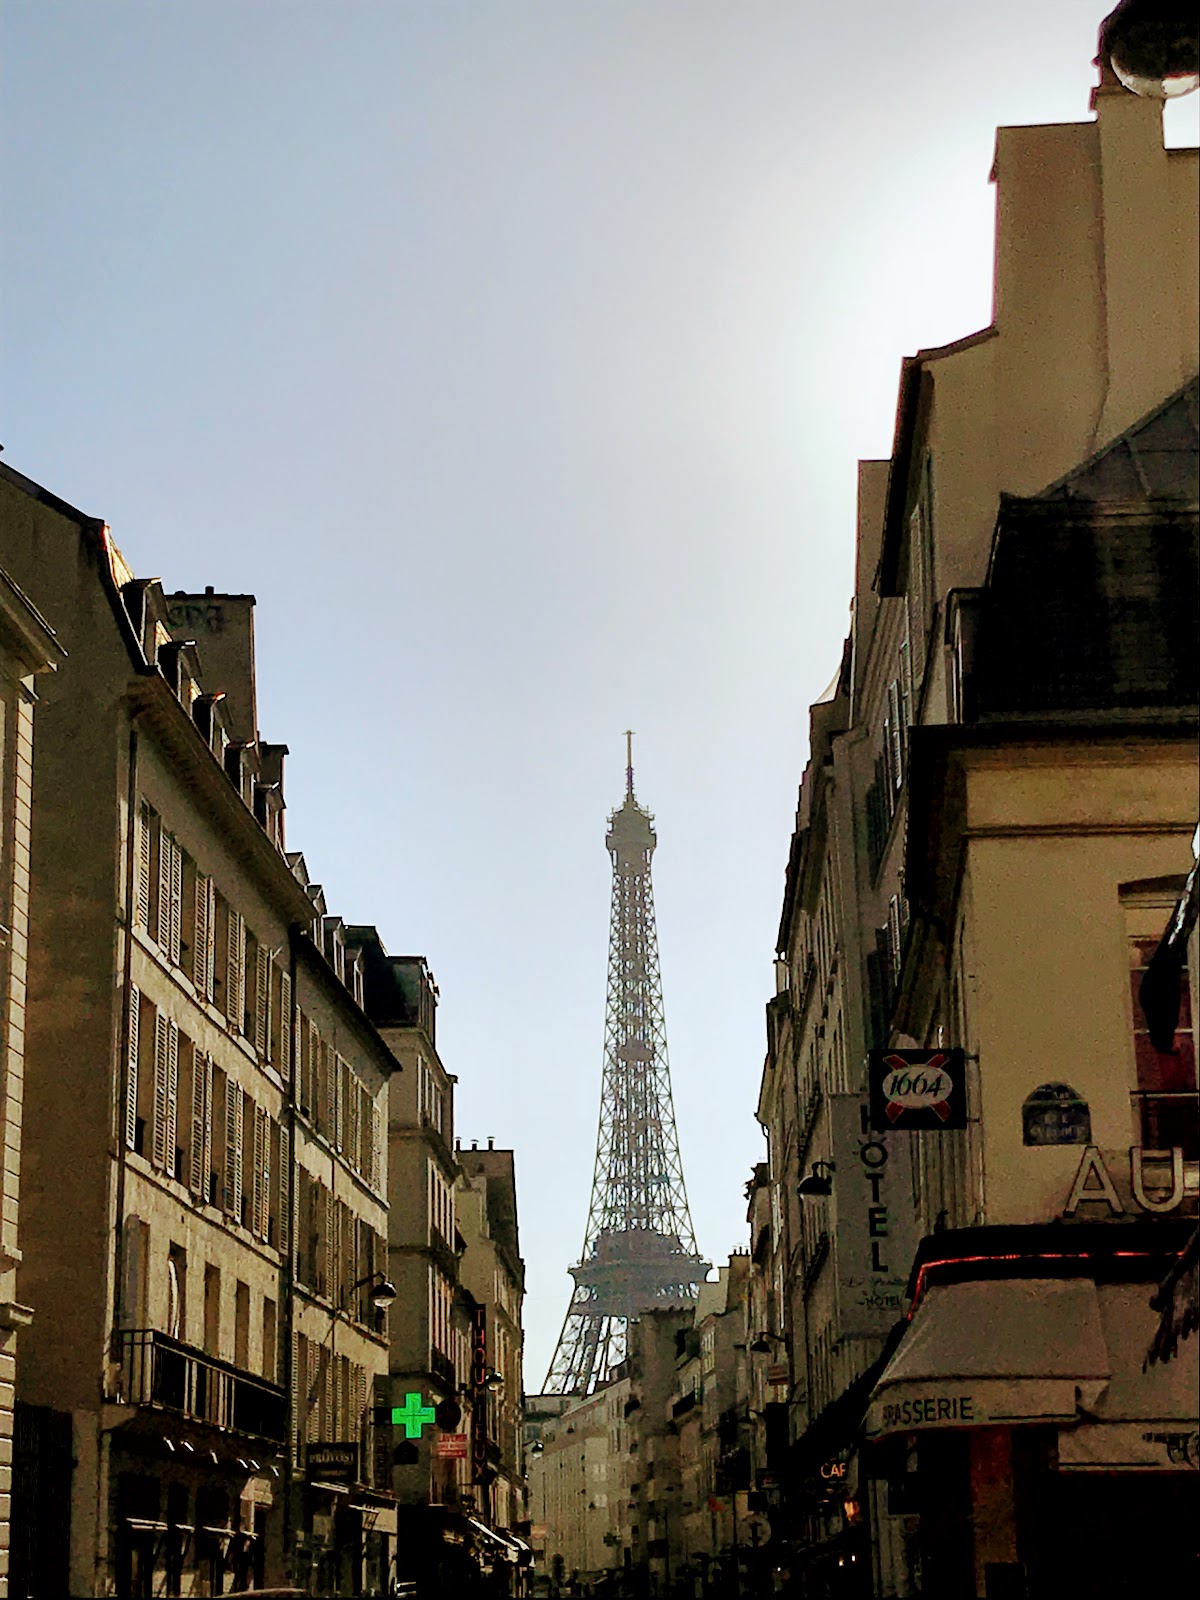 Hotel brasserie y edificios con torre Eiffel de fondo